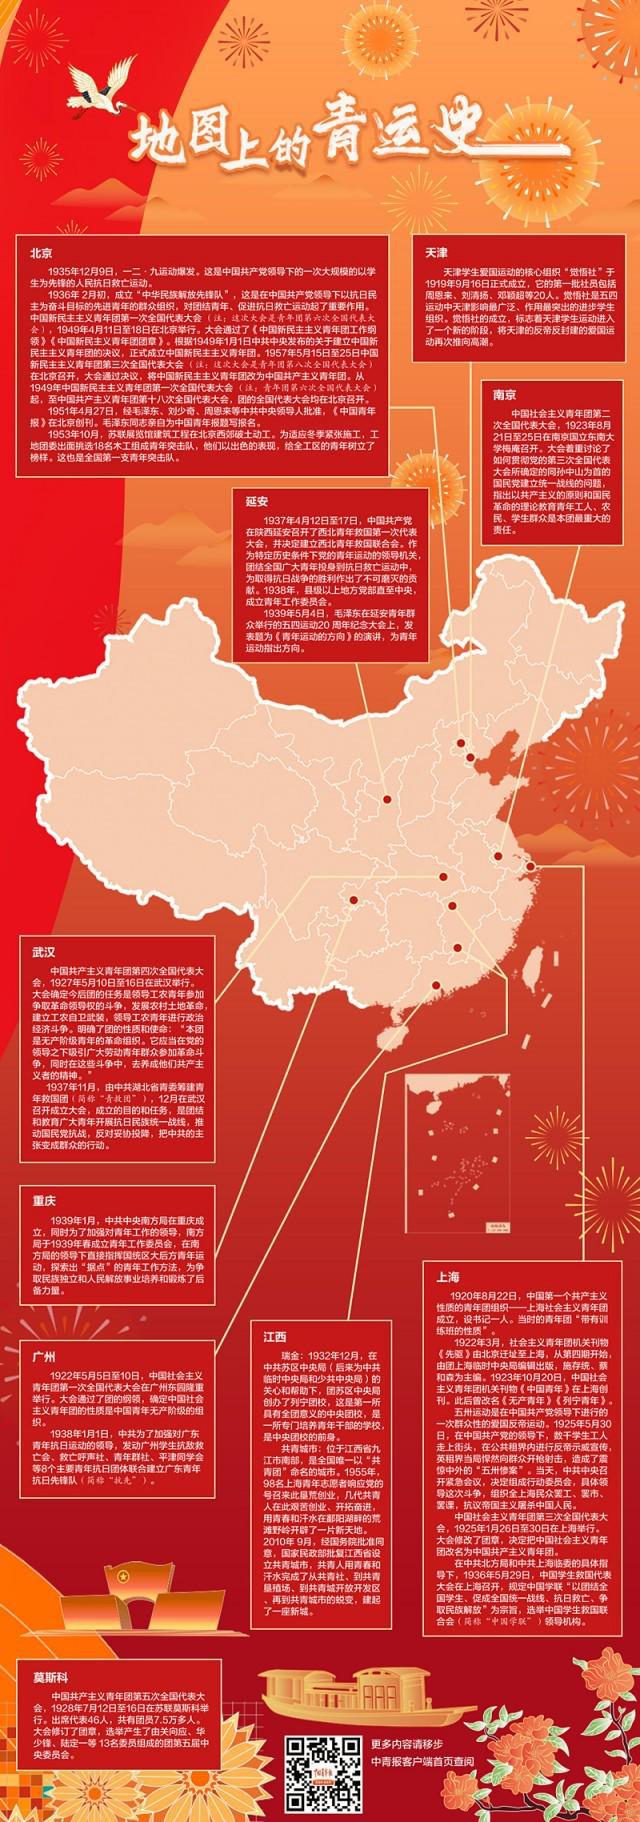 可放大中国地图清晰版，可放大中国地图 全图